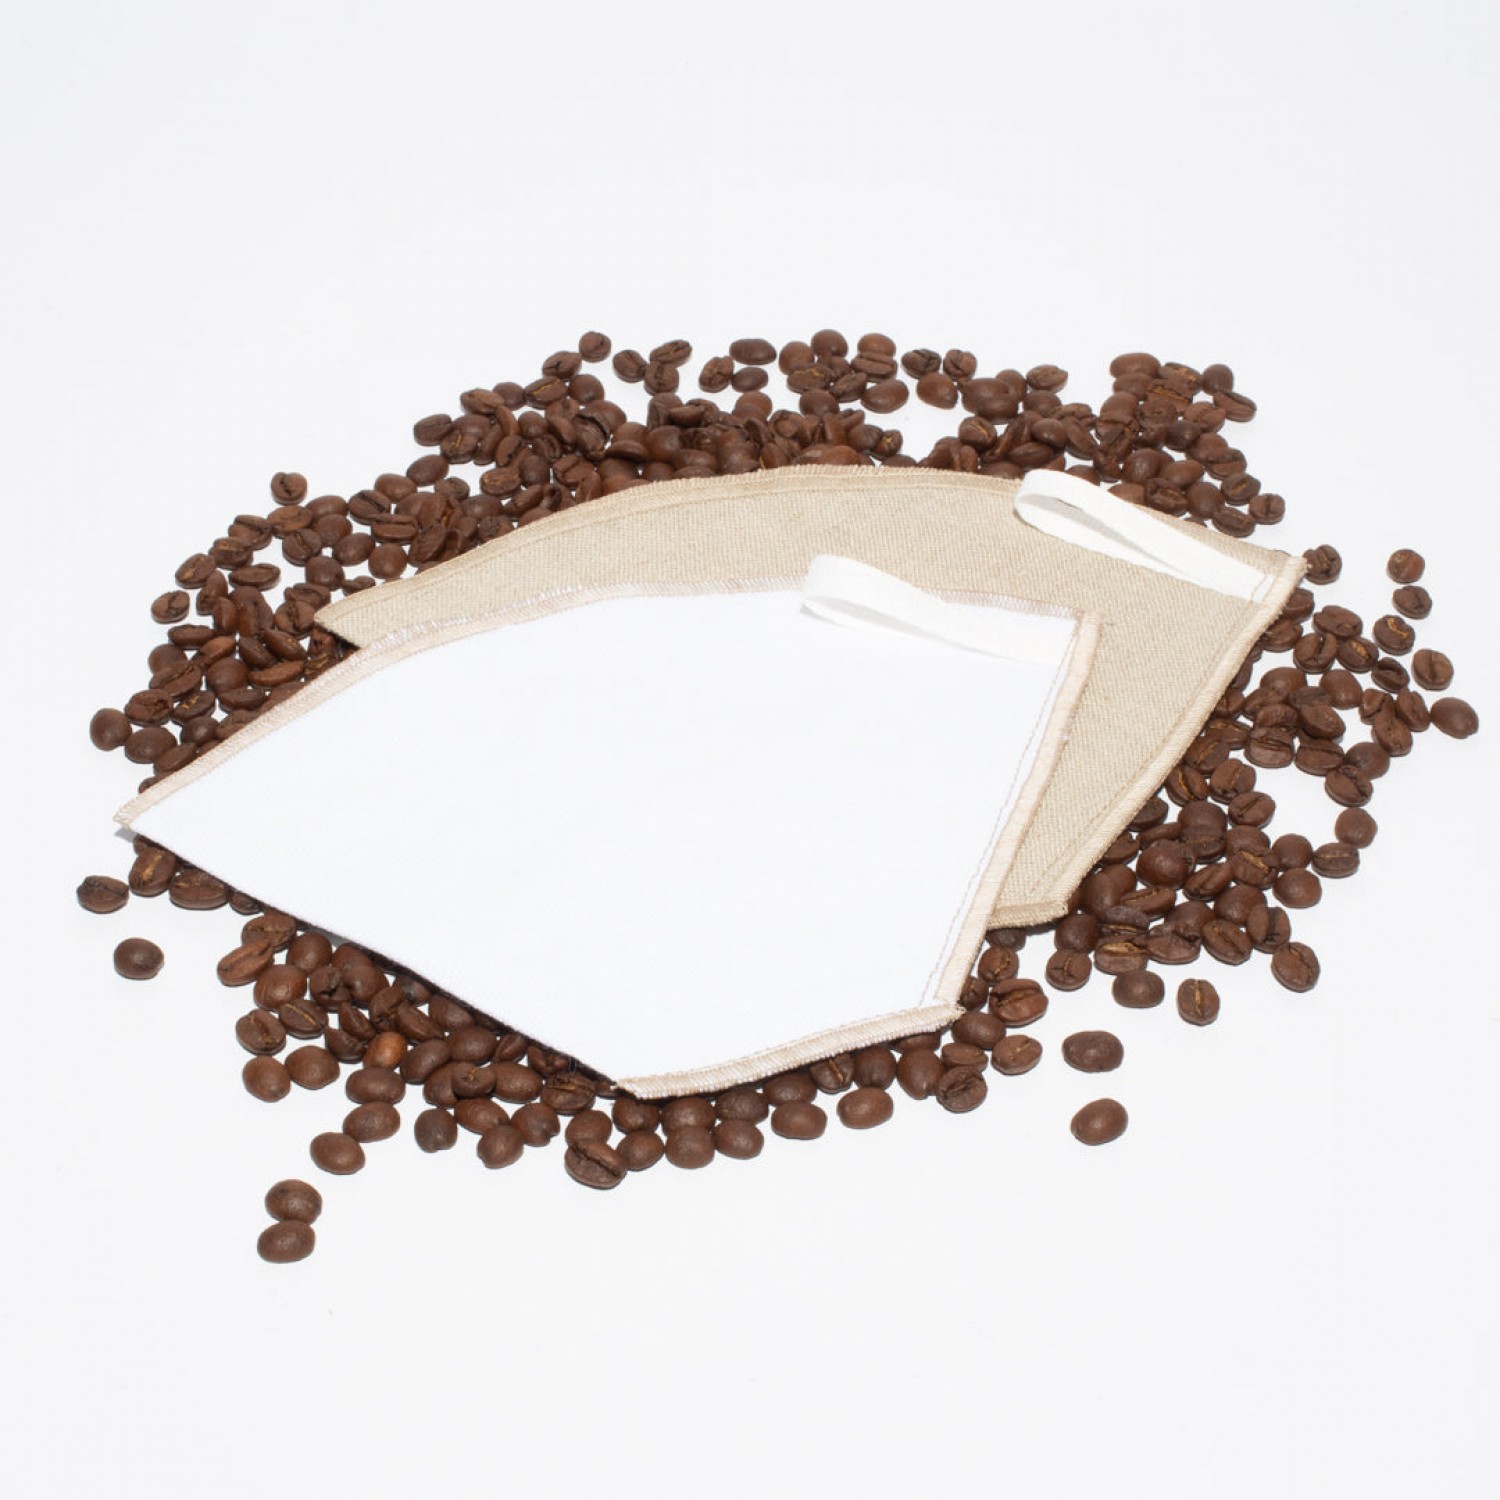 Bioleinen-Kaffeefilter - Mehrwegkaffeefilter » nahtur-design